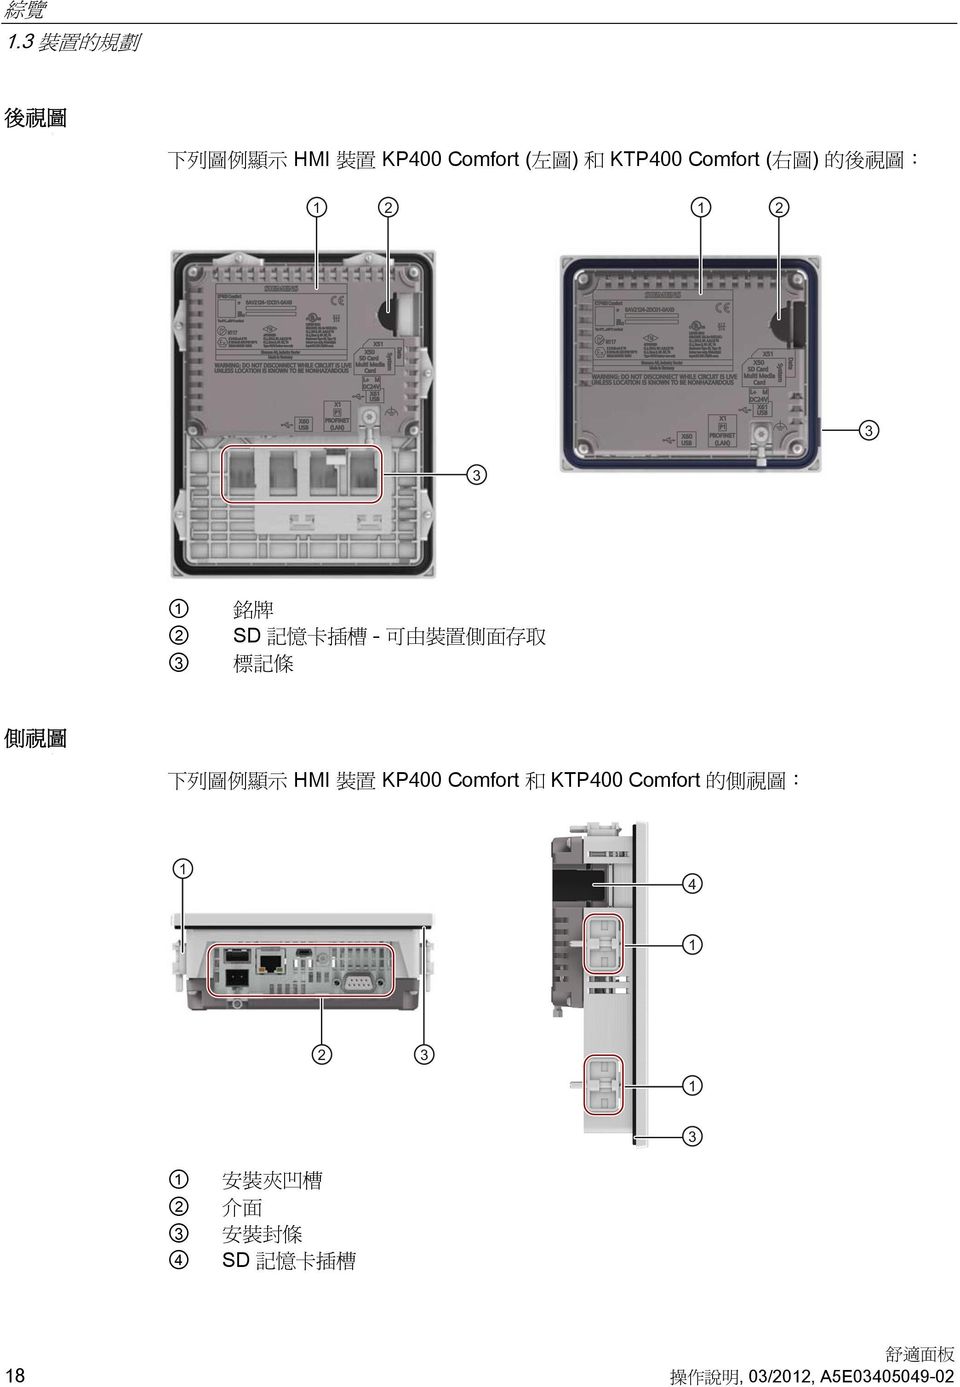 側視圖 下列圖例顯示 HMI 裝置 KP400 Comfort 和 KTP400 Comfort 的側視圖 ① ②